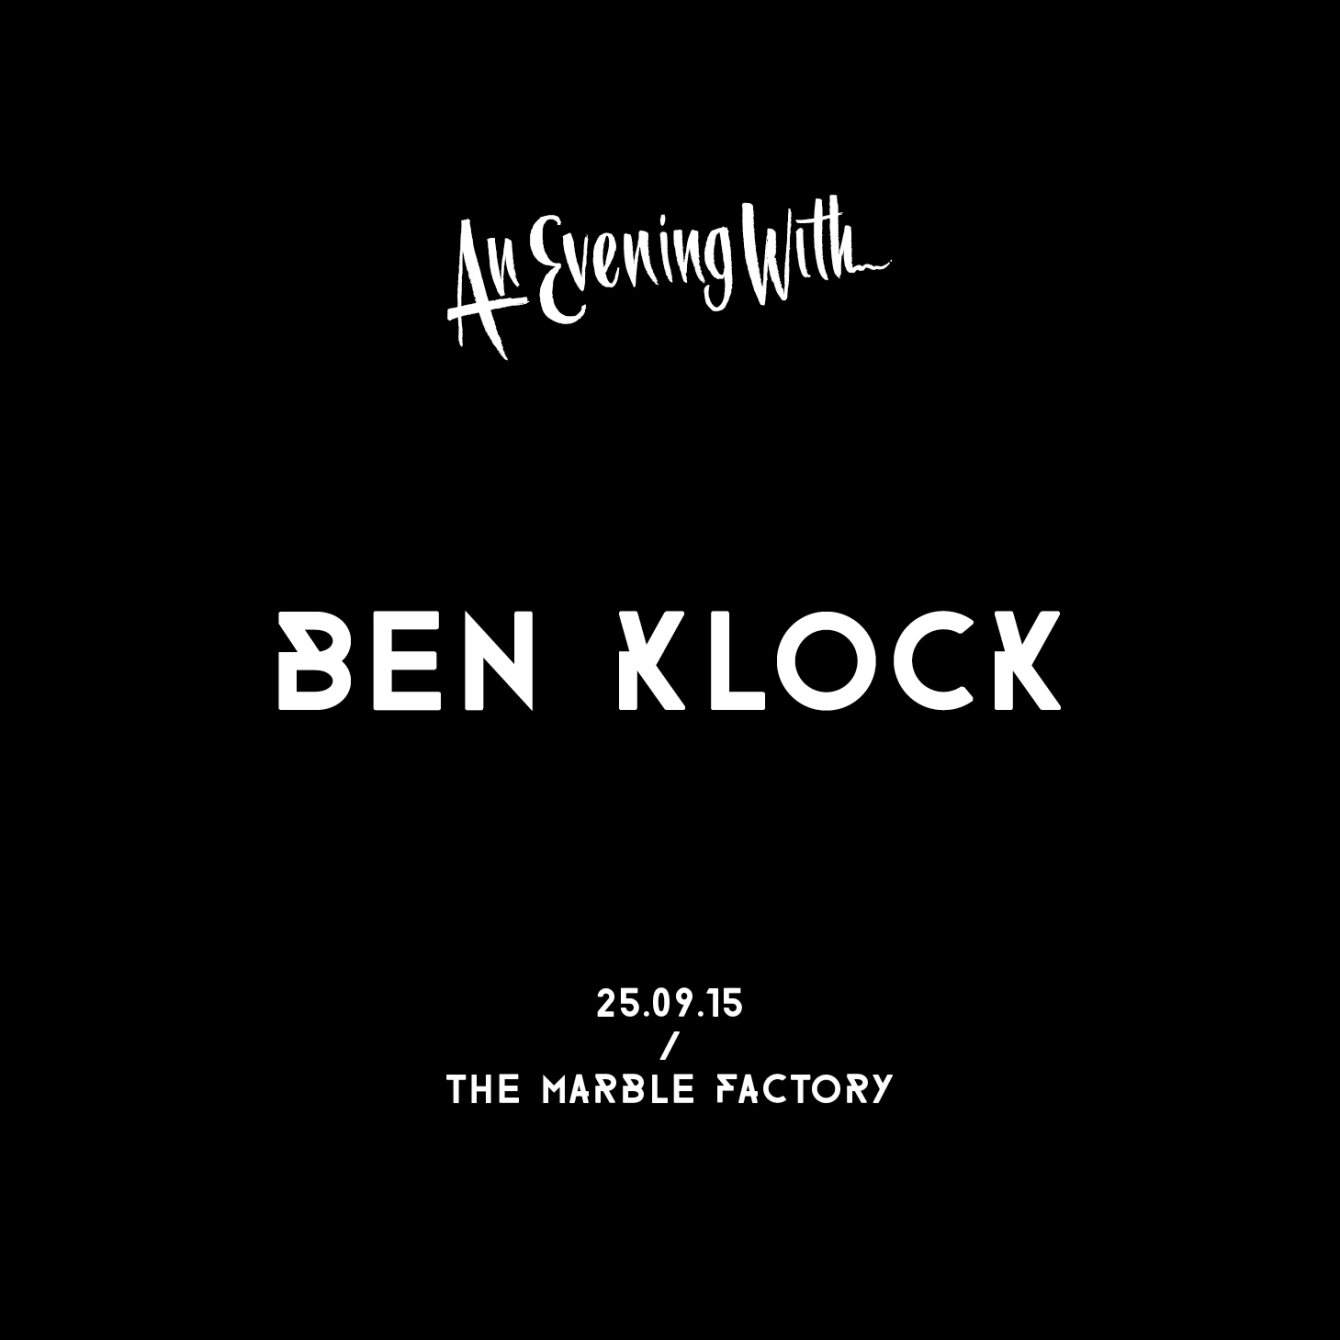 An Evening with Ben Klock - Página frontal